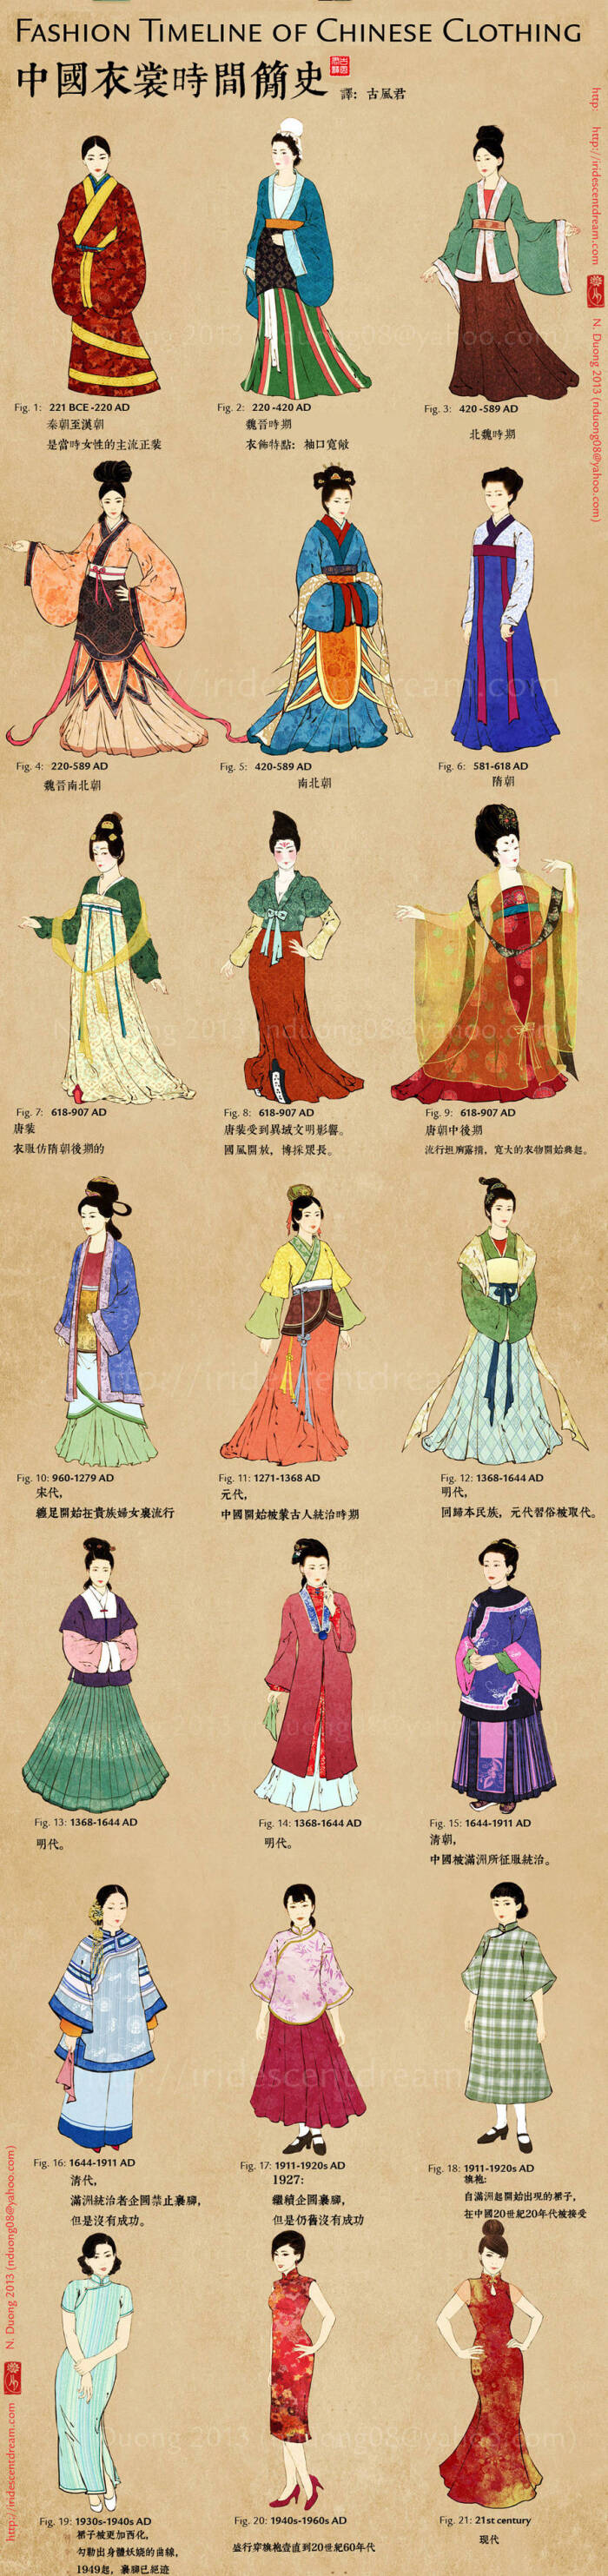 关于中国传统服饰